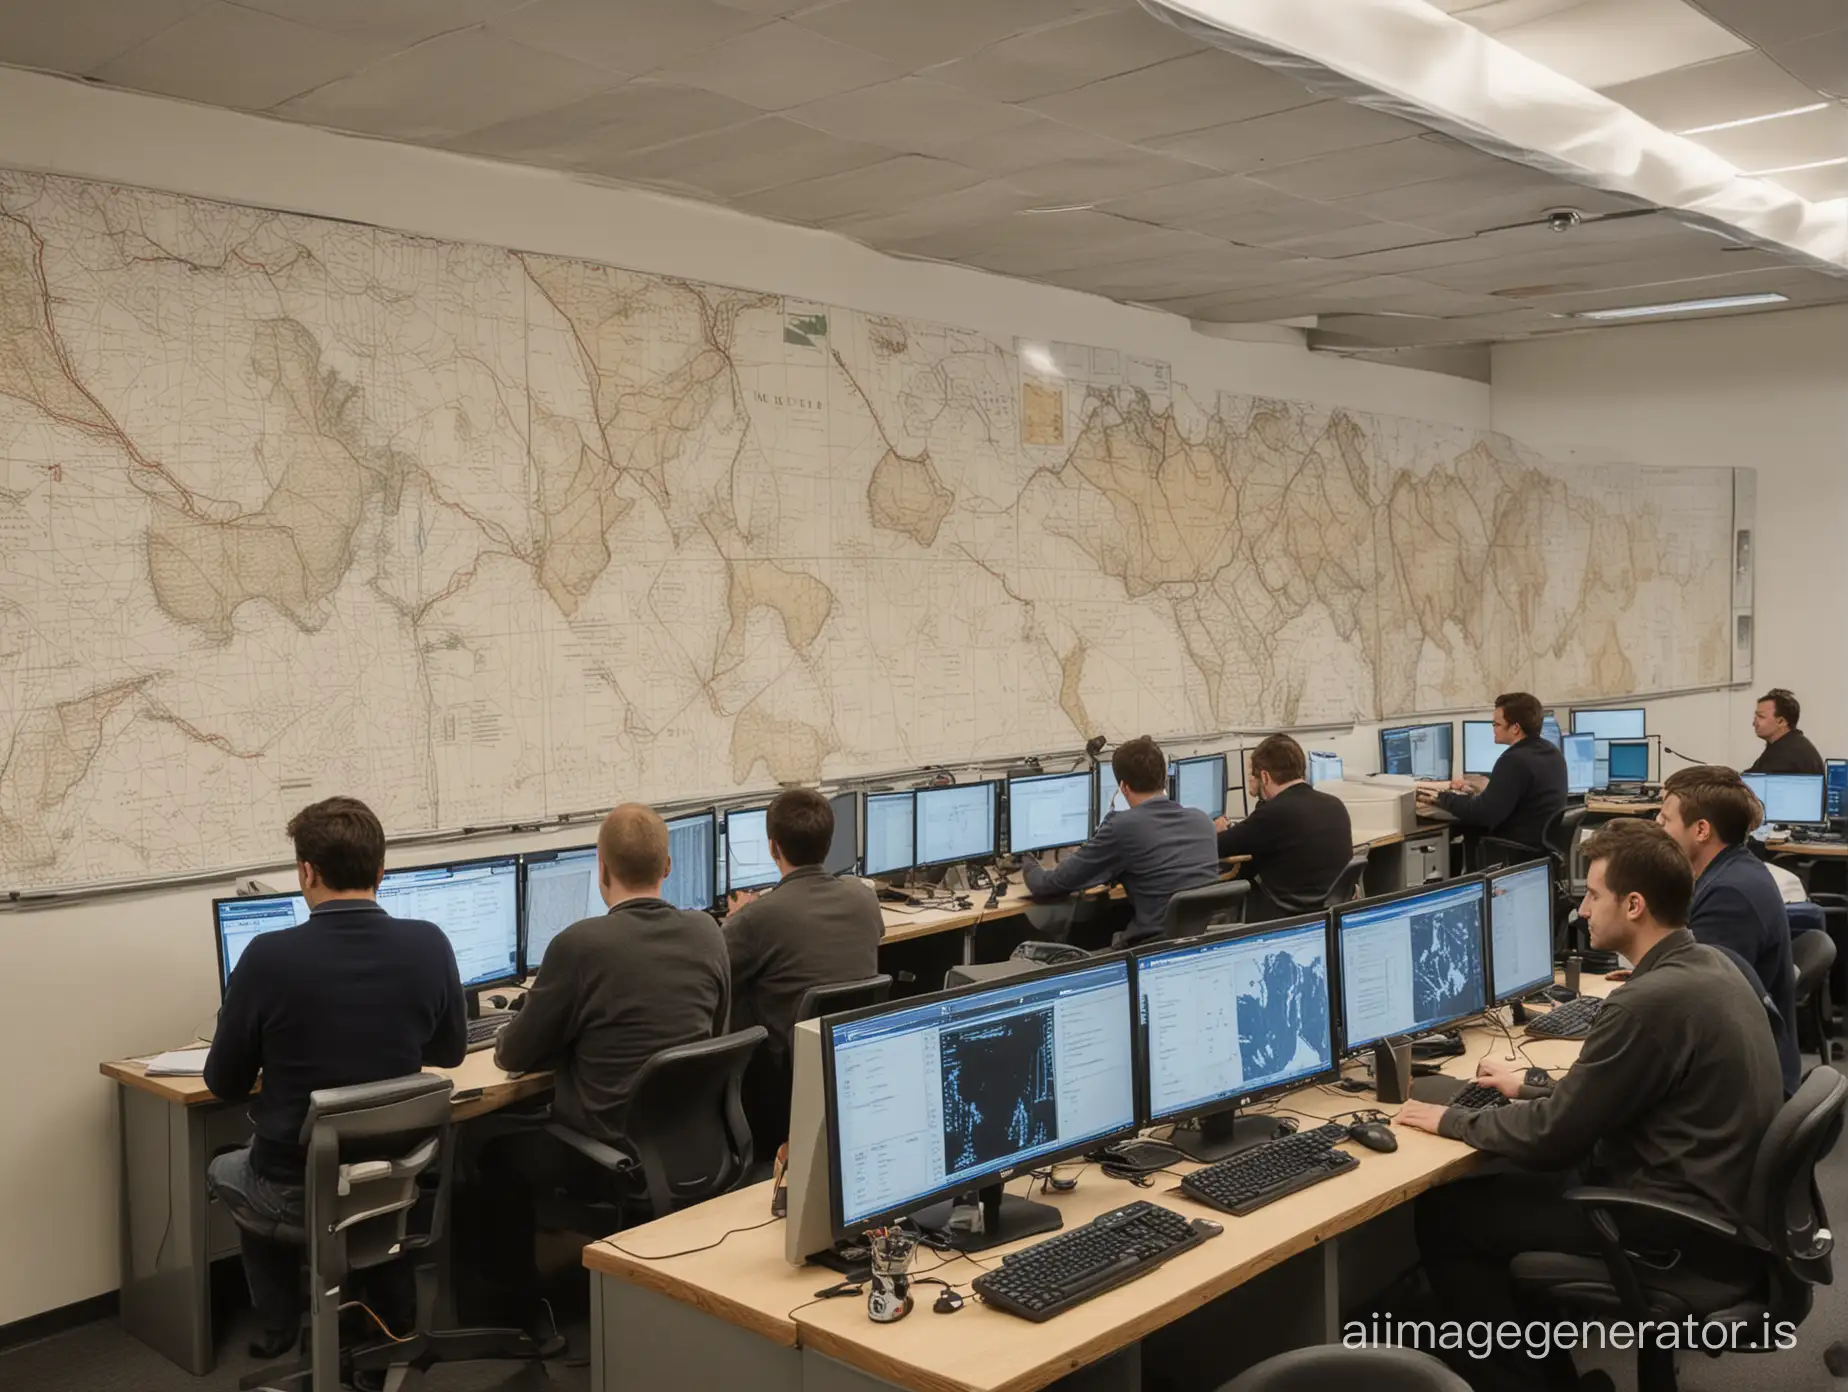 десять мужчин сидят за компьютерами, а на стенах висят схемы, графики и географические карты